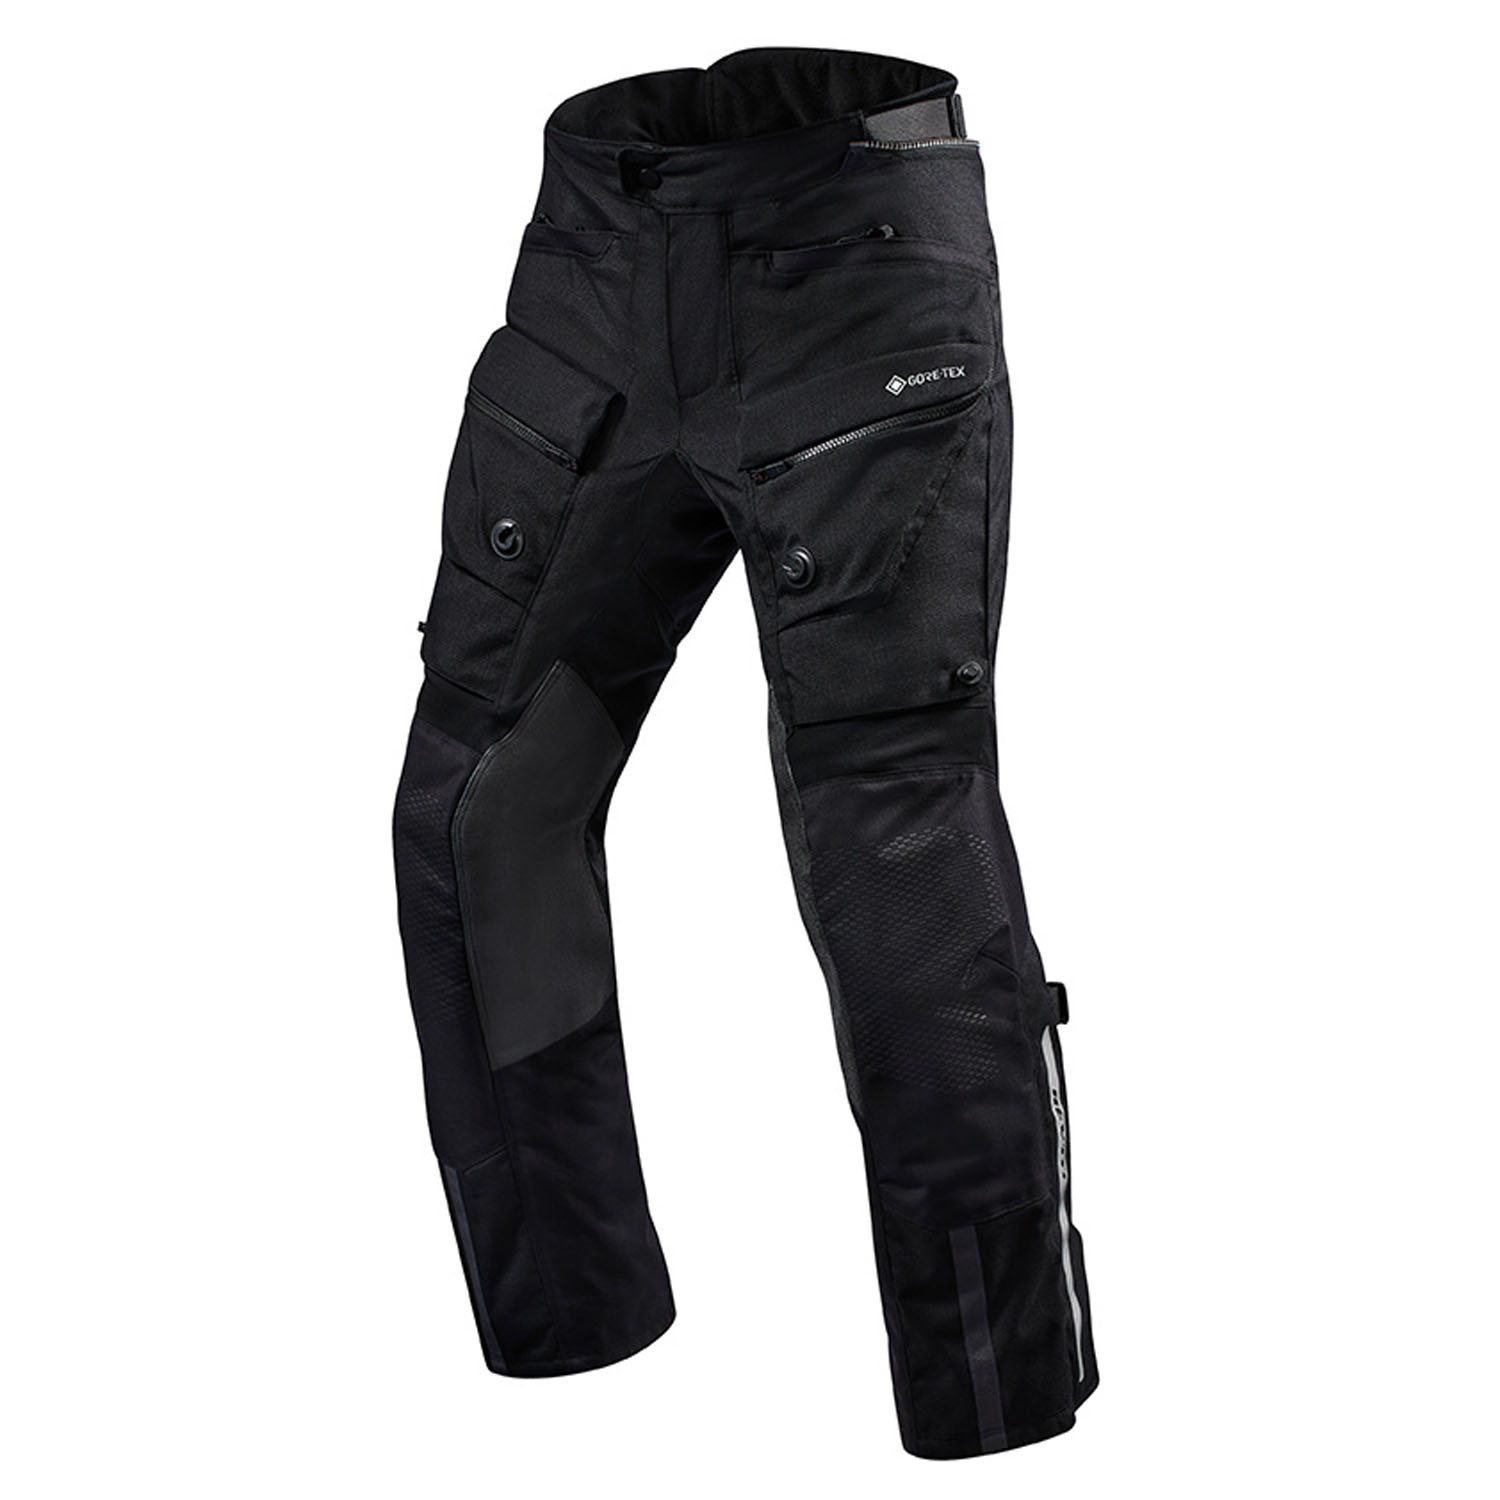 Image of REV'IT! Trousers Defender 3 GTX Black Long Motorcycle Pants Größe XL